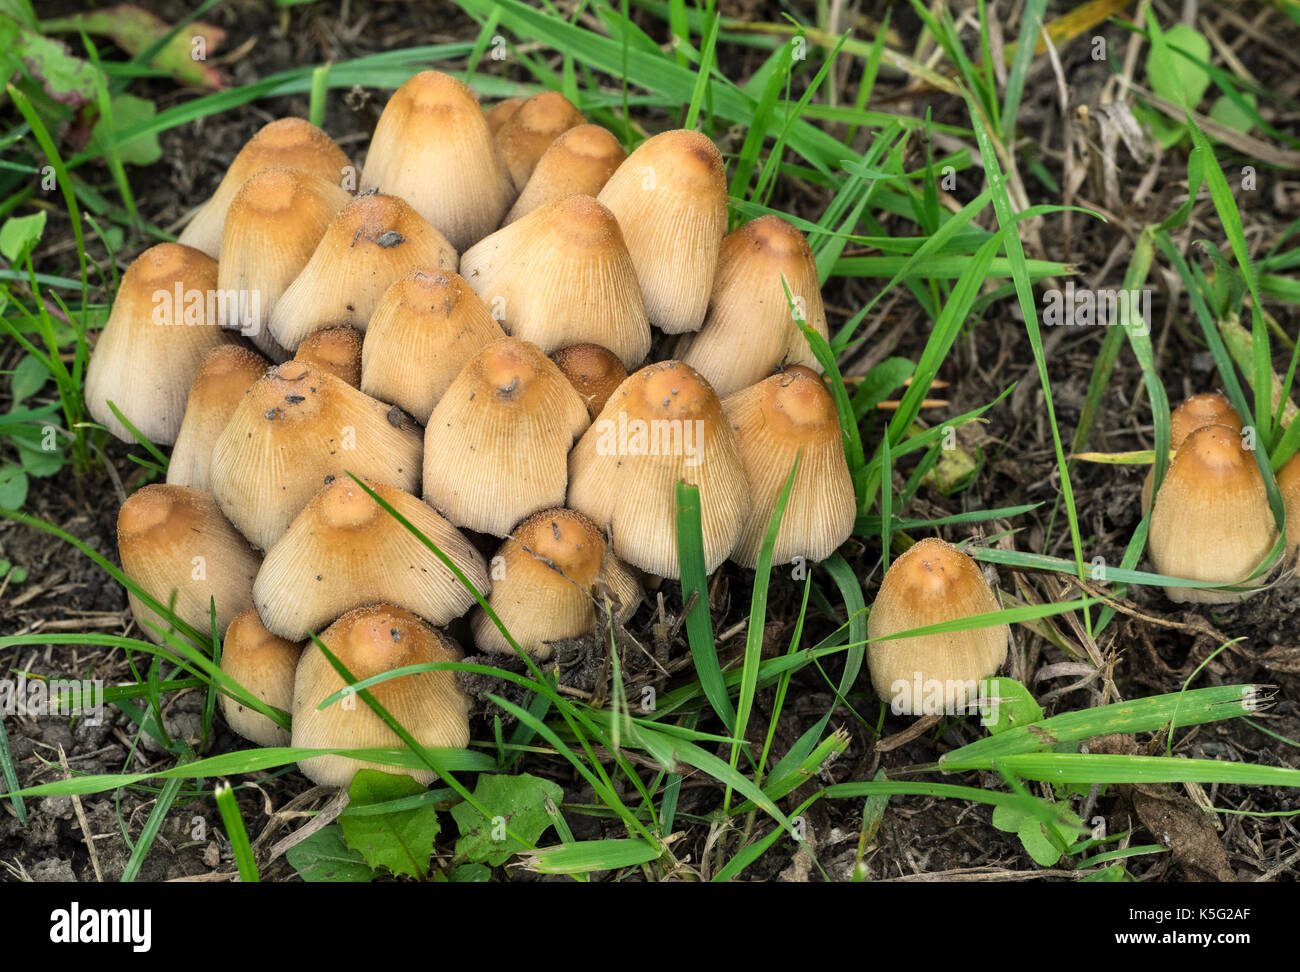 Poisonous mushrooms Coprinellus micaceus Stock Photo